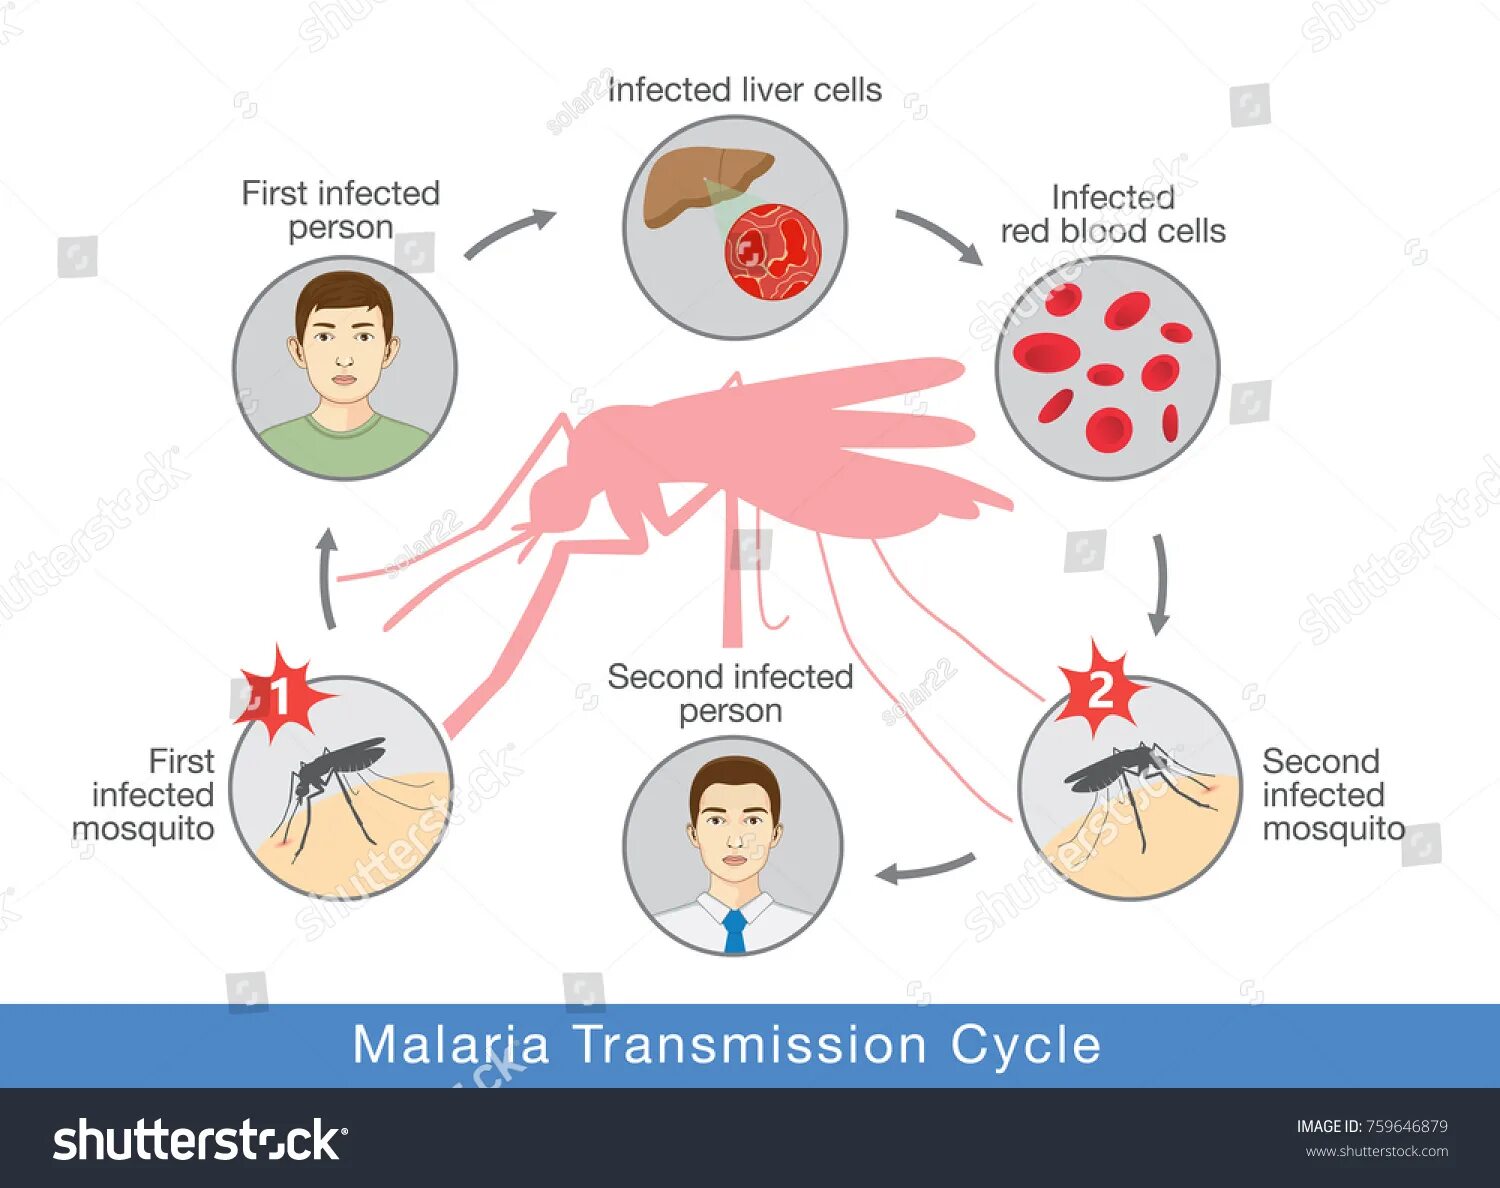 Как происходит заражение человека малярийным плазмодием. Механизм заражения малярией. Малярия механизм передачи инфекции. Механизм передачи малярийного плазмодия. Пути передачи при малярии.